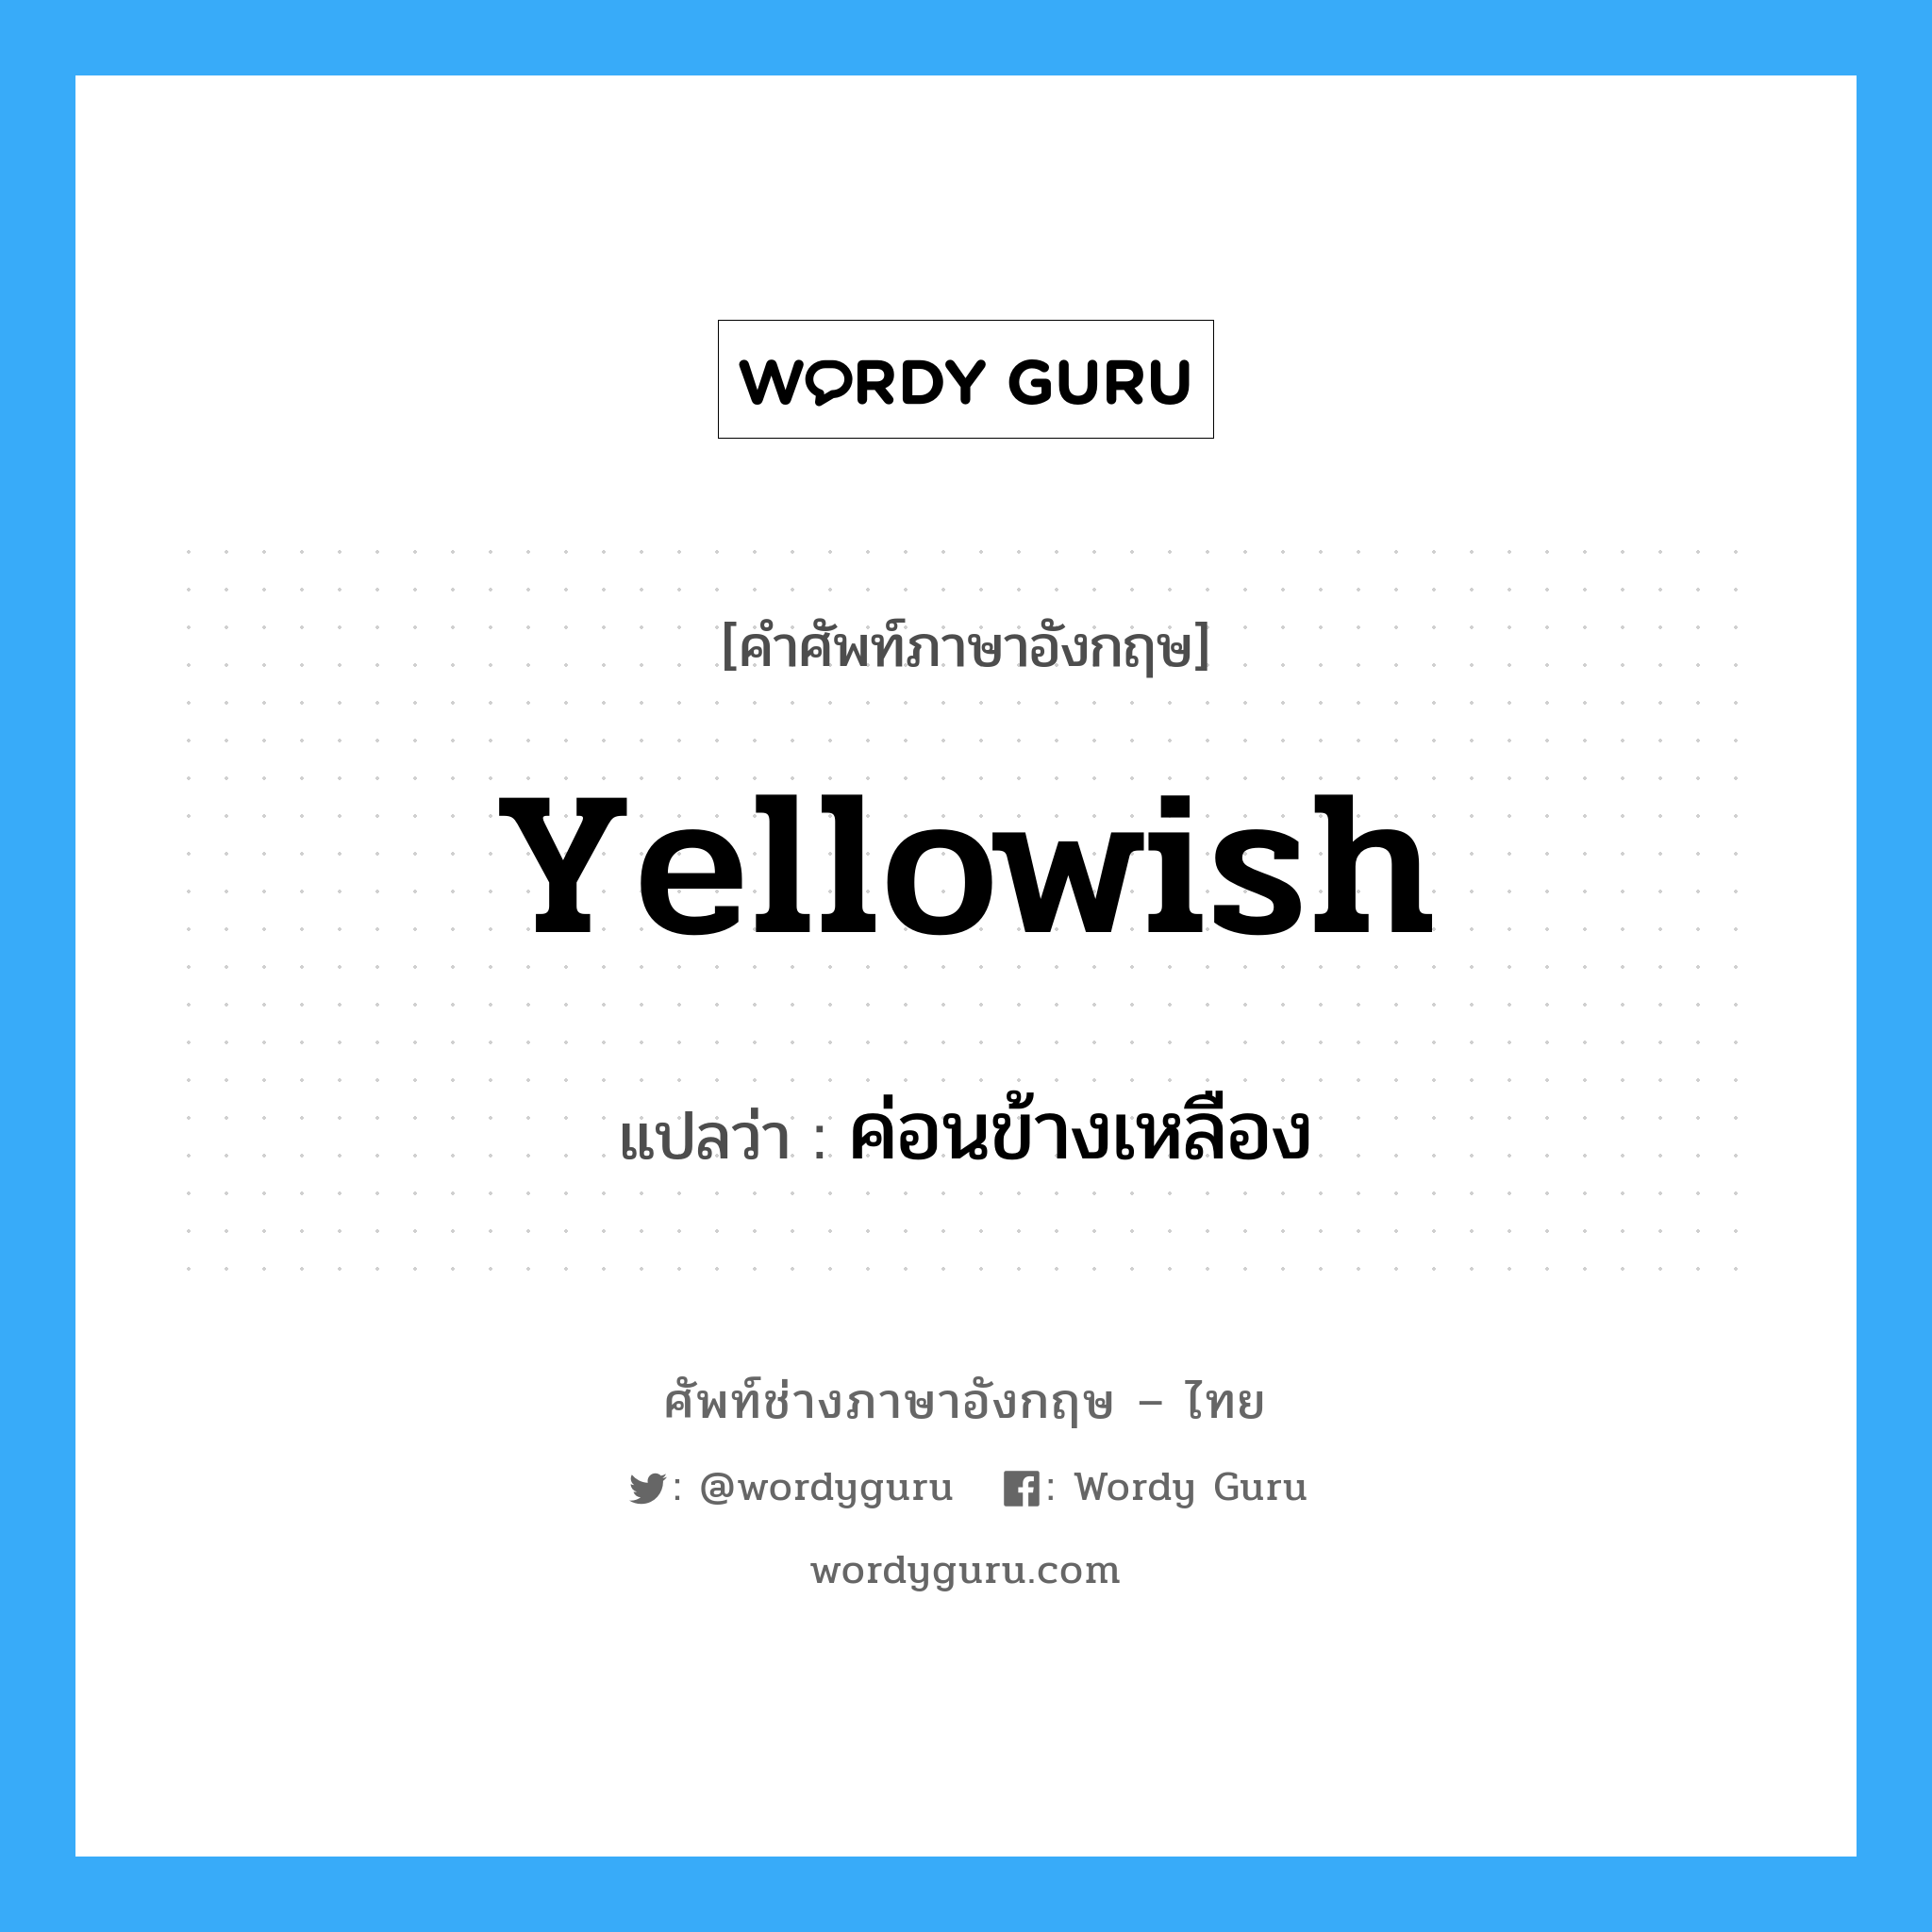 yellowish แปลว่า?, คำศัพท์ช่างภาษาอังกฤษ - ไทย yellowish คำศัพท์ภาษาอังกฤษ yellowish แปลว่า ค่อนข้างเหลือง